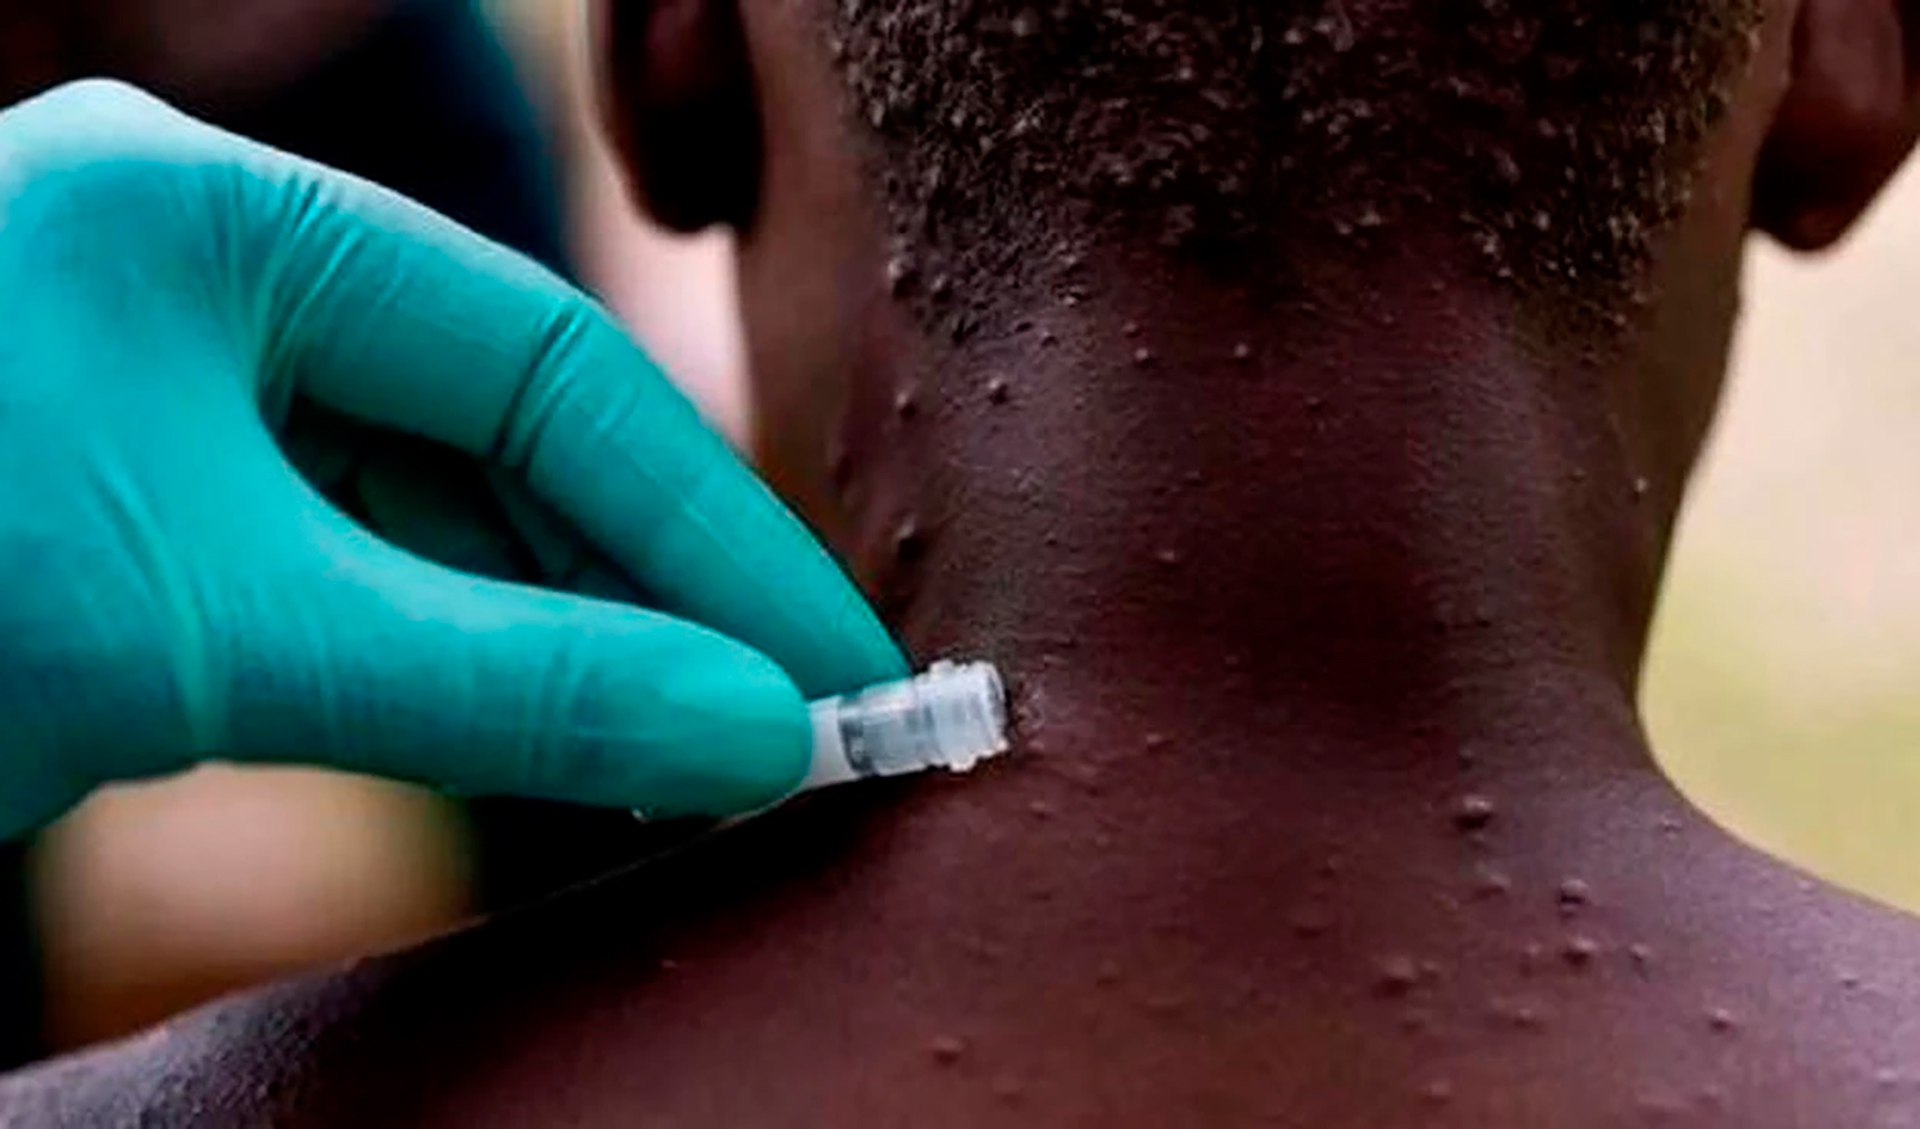 Después de que la viruela fuera declarada erradicada en 1980, la antivariólica dejó de aplicarse. Una decisión que en la Argentina tuvo lugar en 1978.
(Nigeria Centre for Disease Control)